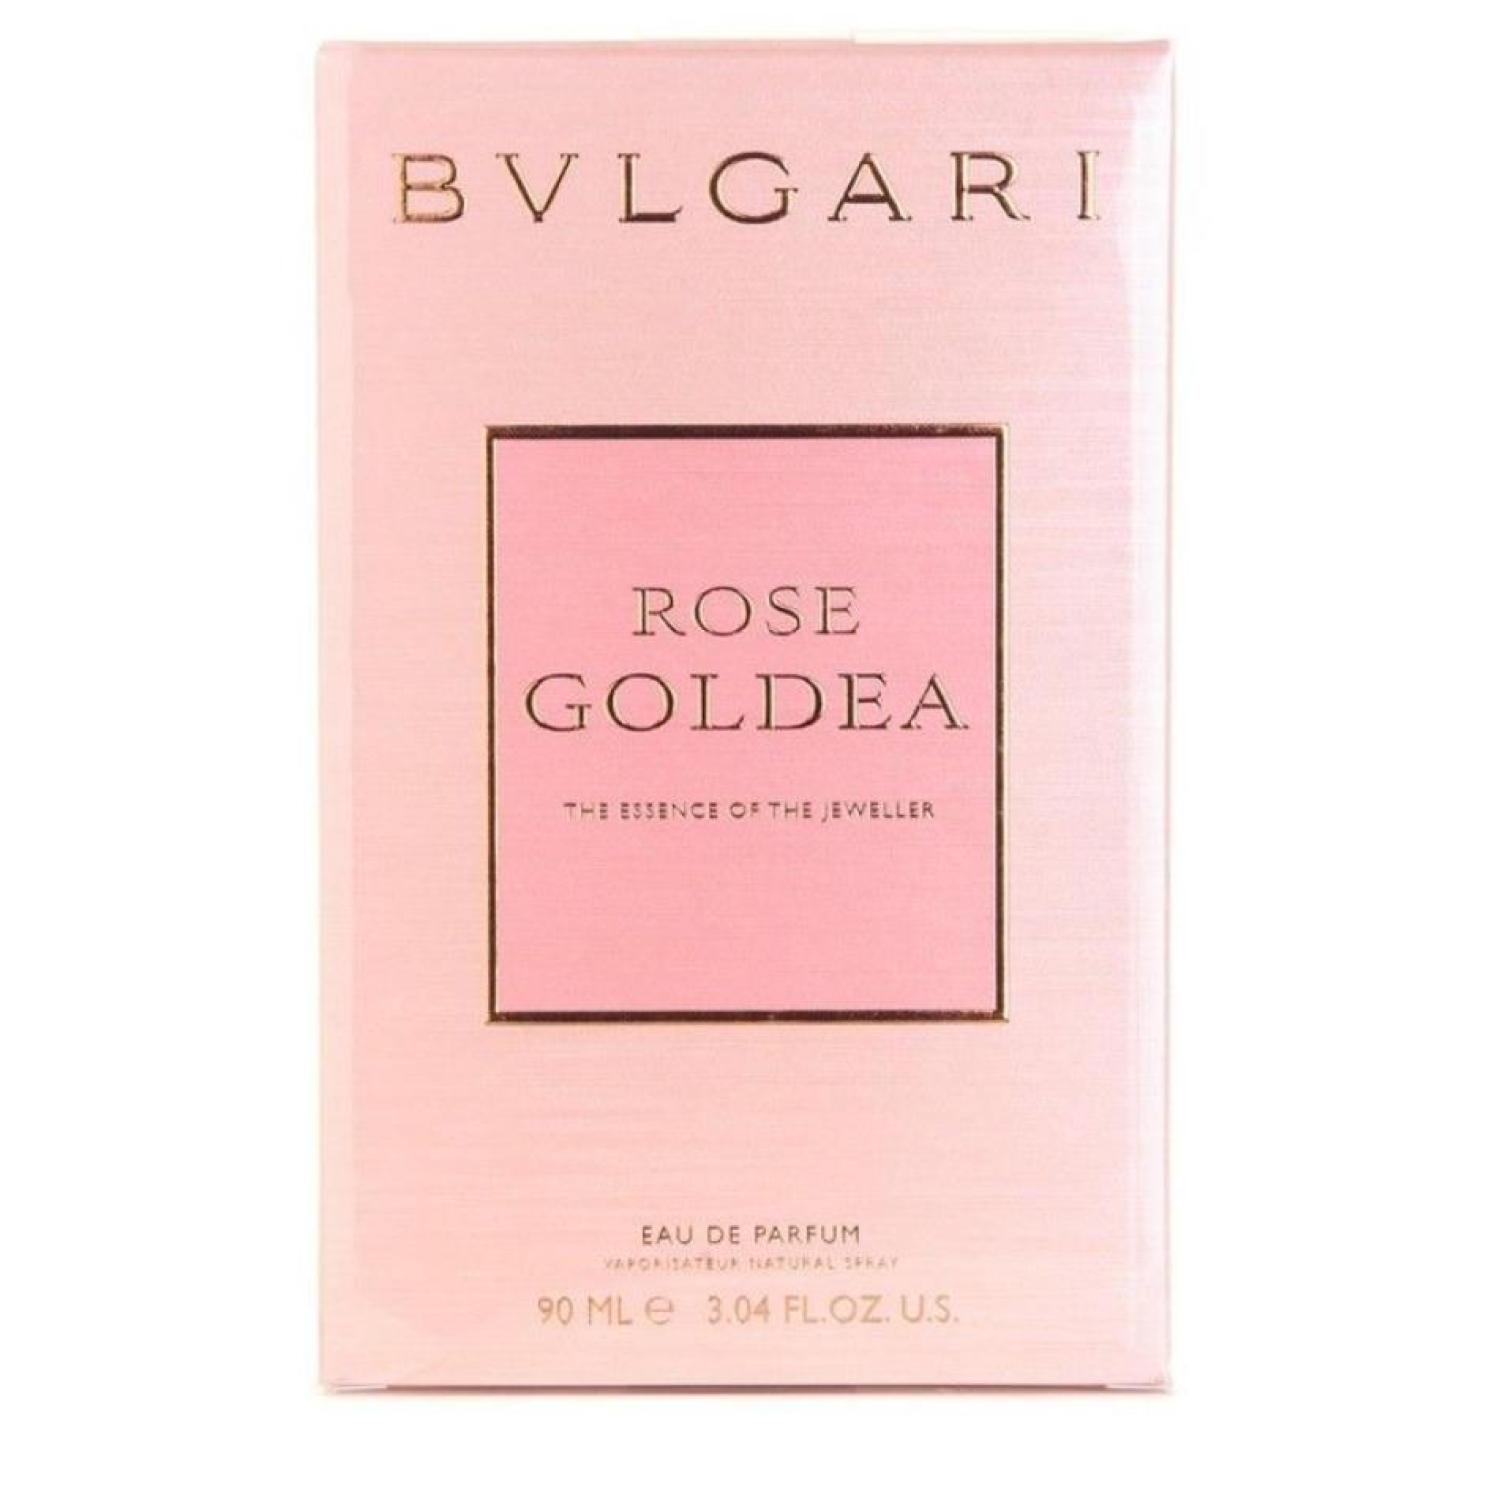 bvlgari rose goldea price philippines